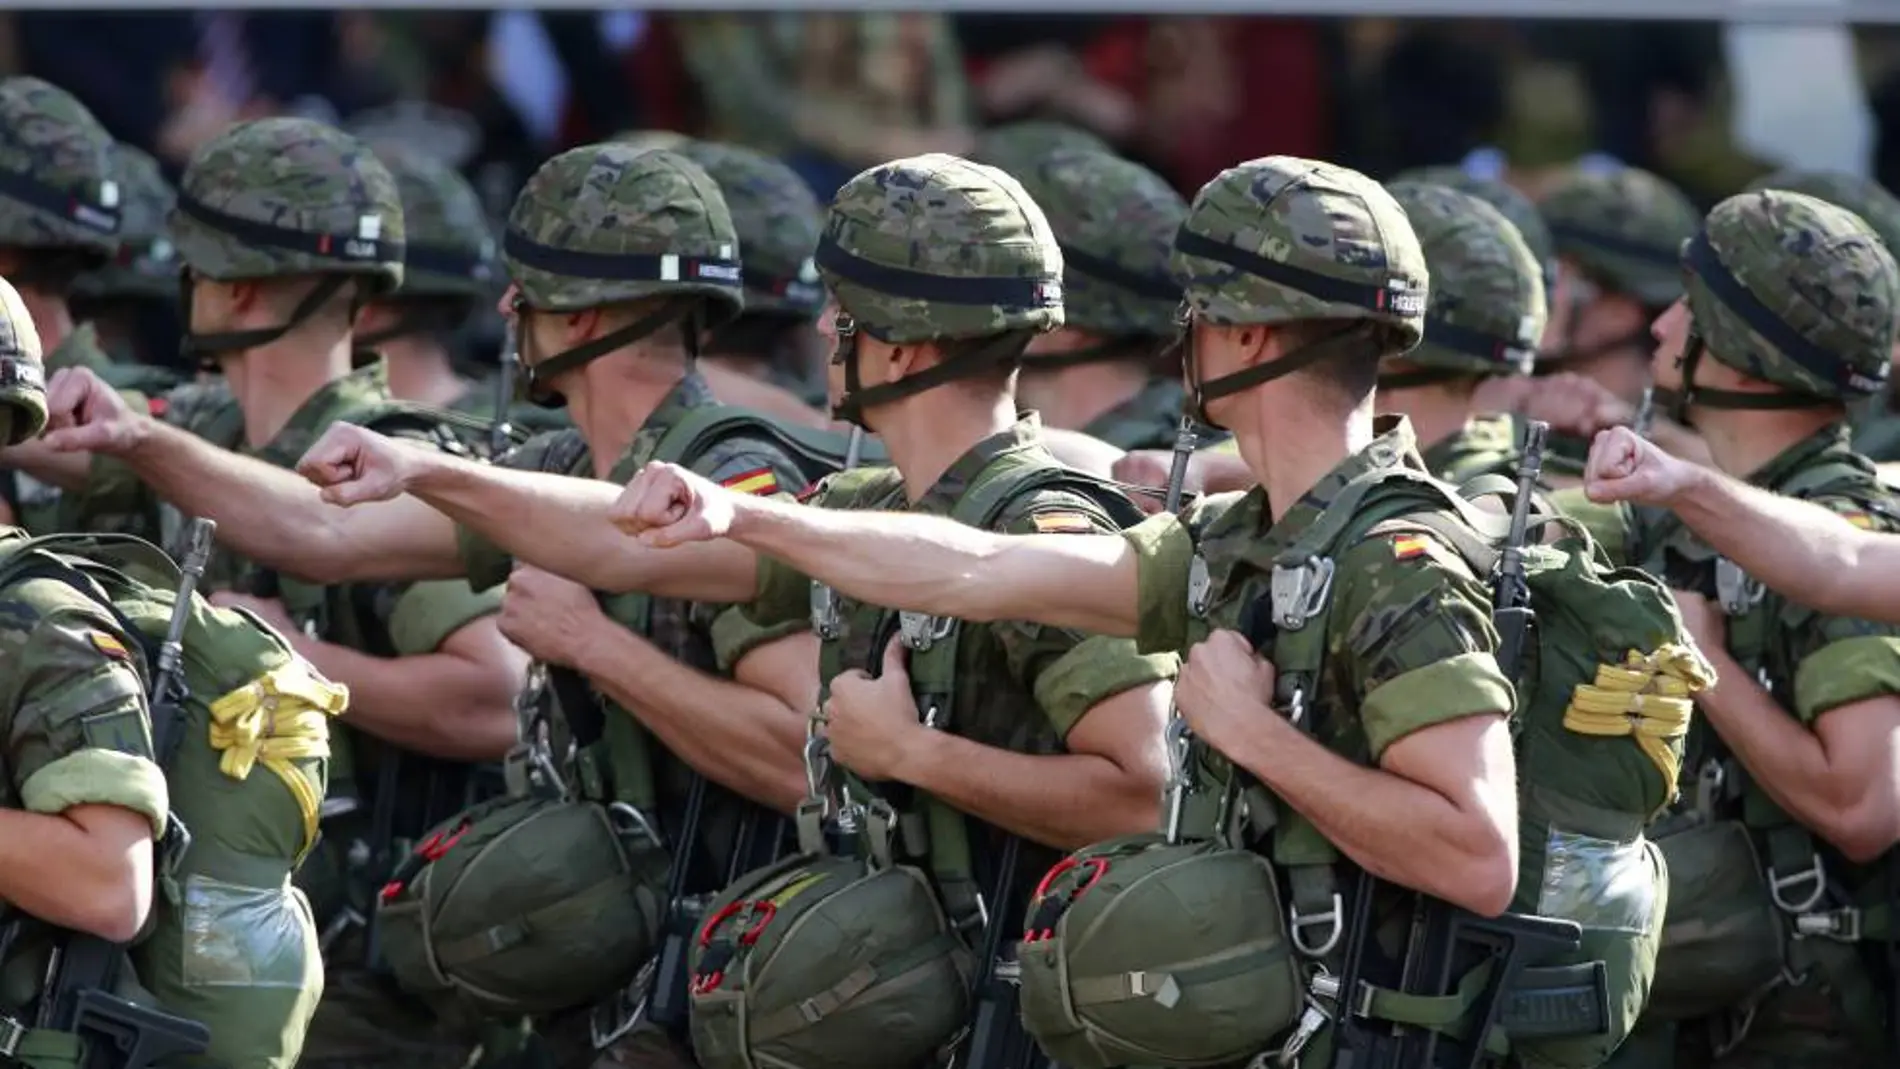 La Justicia militar investiga dos nuevos casos de acoso sexual en el Ejército